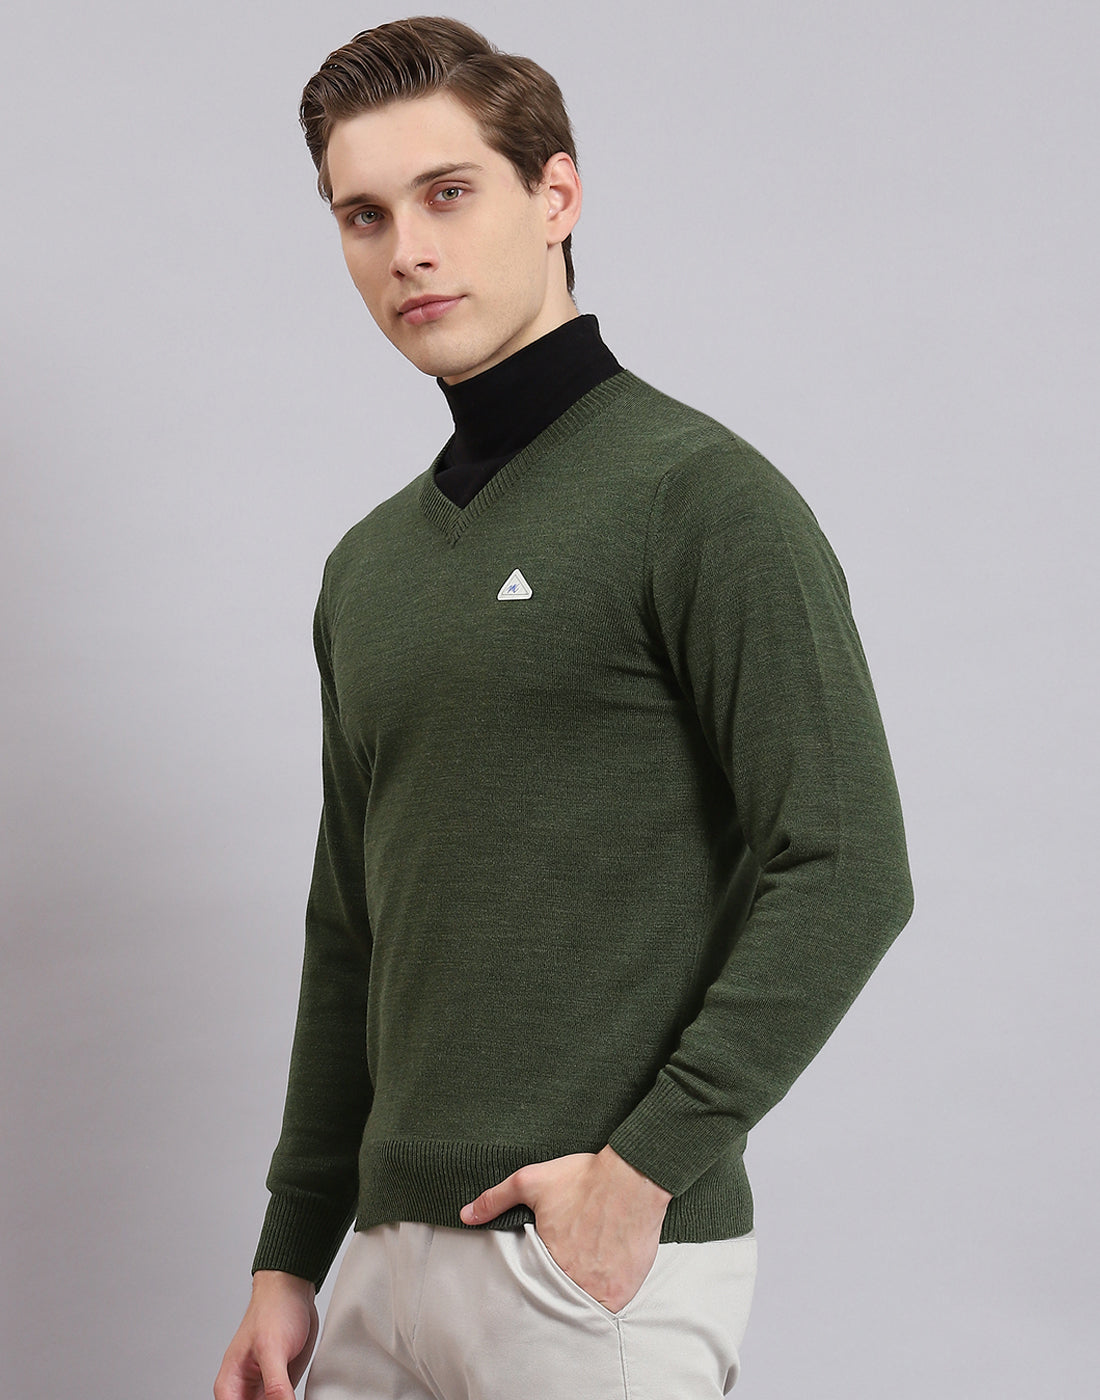 Men Green Solid V Neck Full Sleeve Sweater